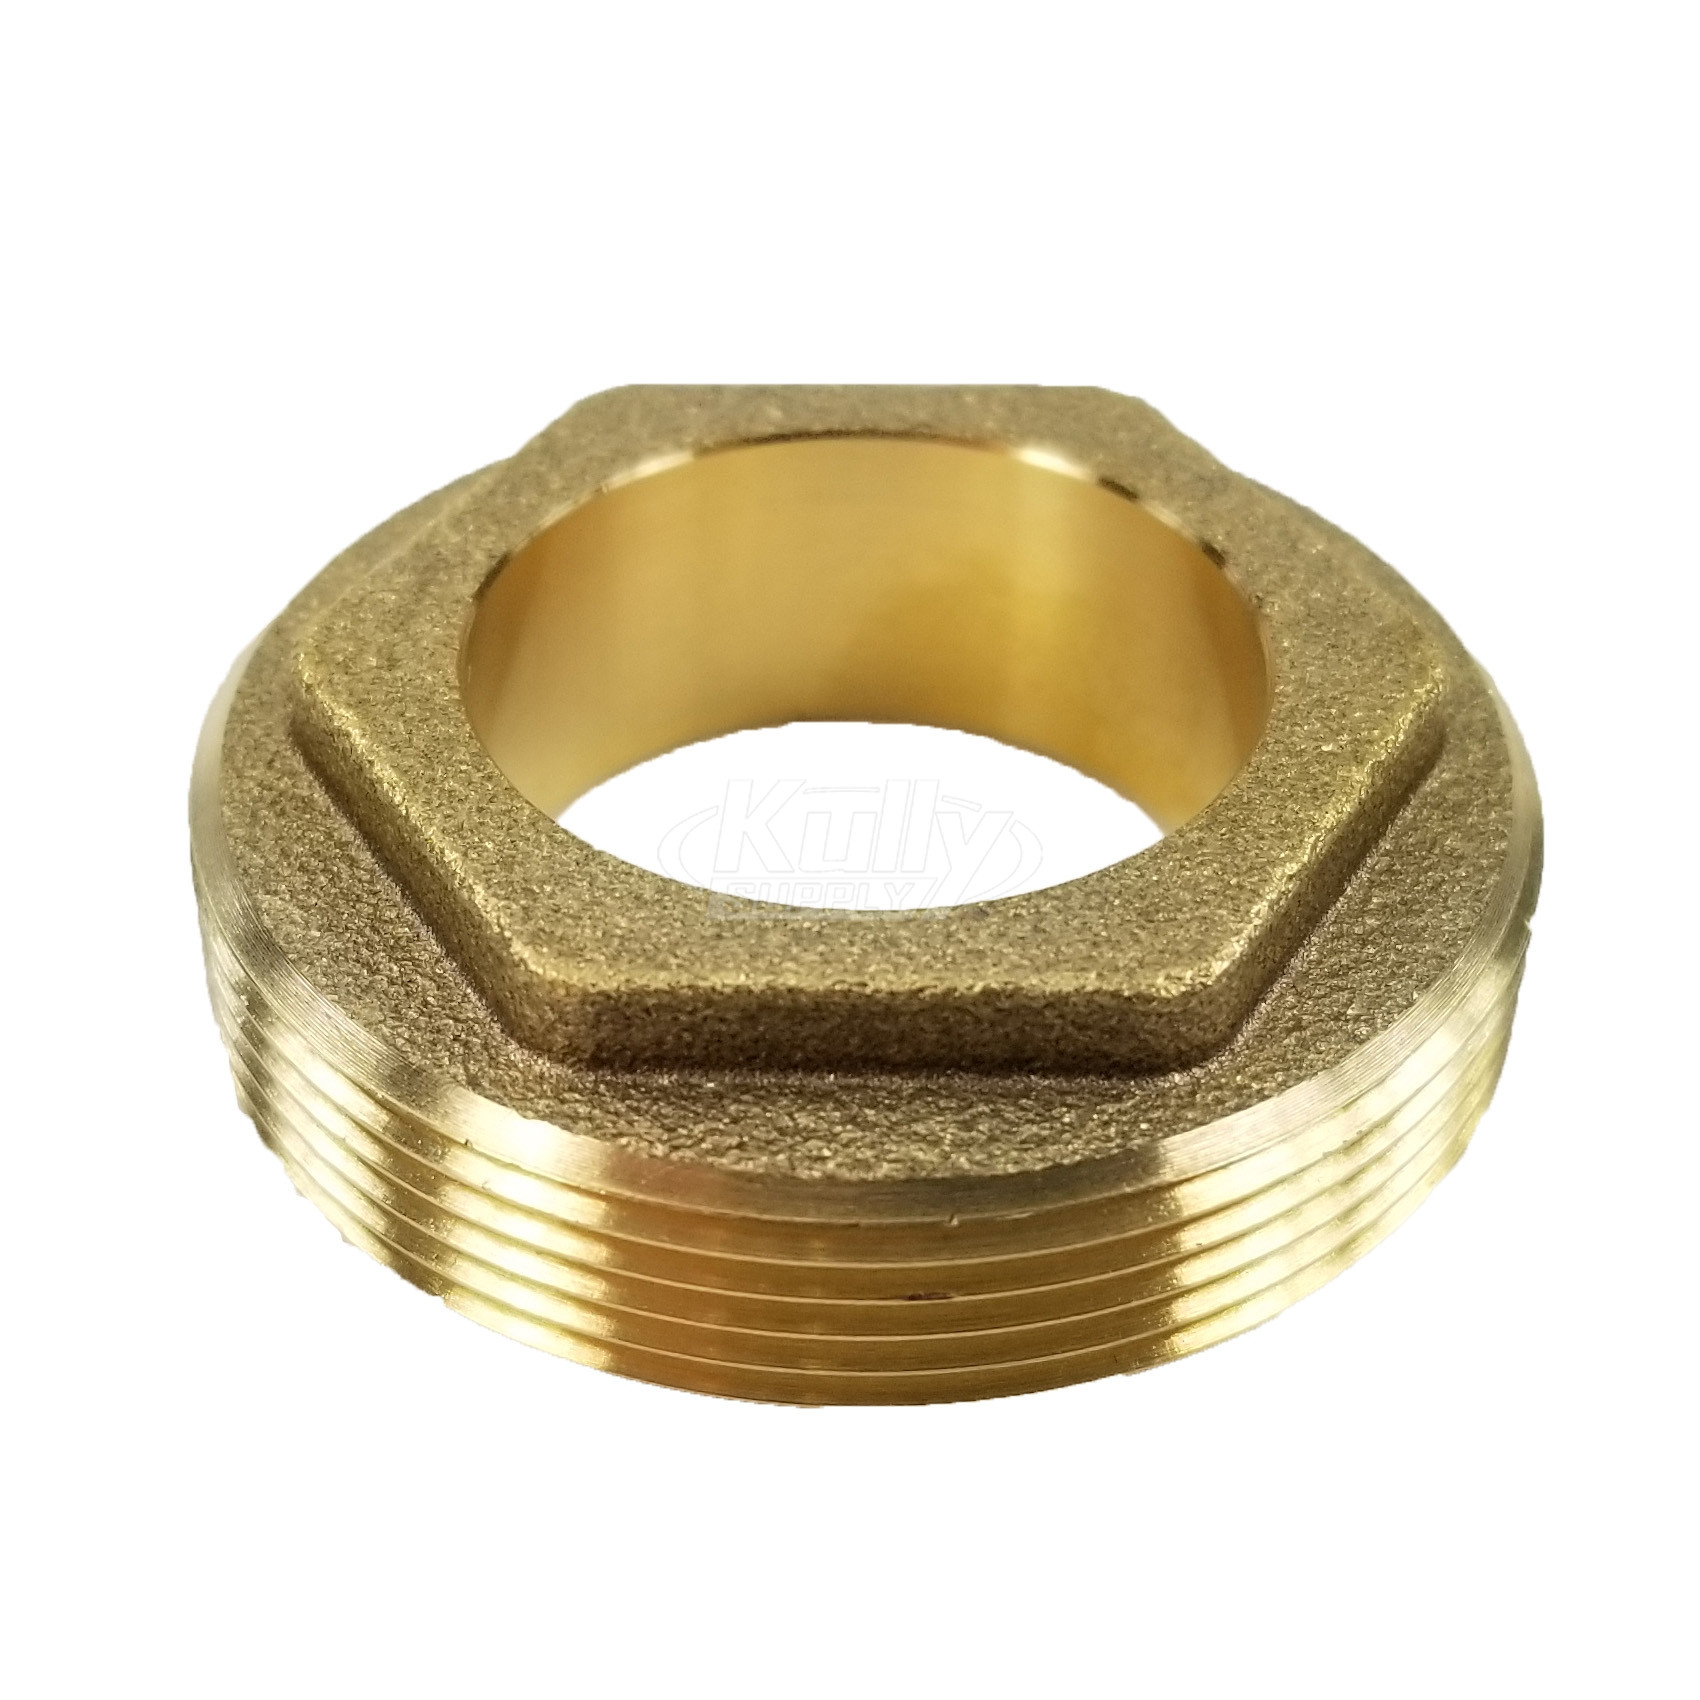 Zurn 62795001 Nut Brass Retaining For Cartridge Z822 Z823 Z824